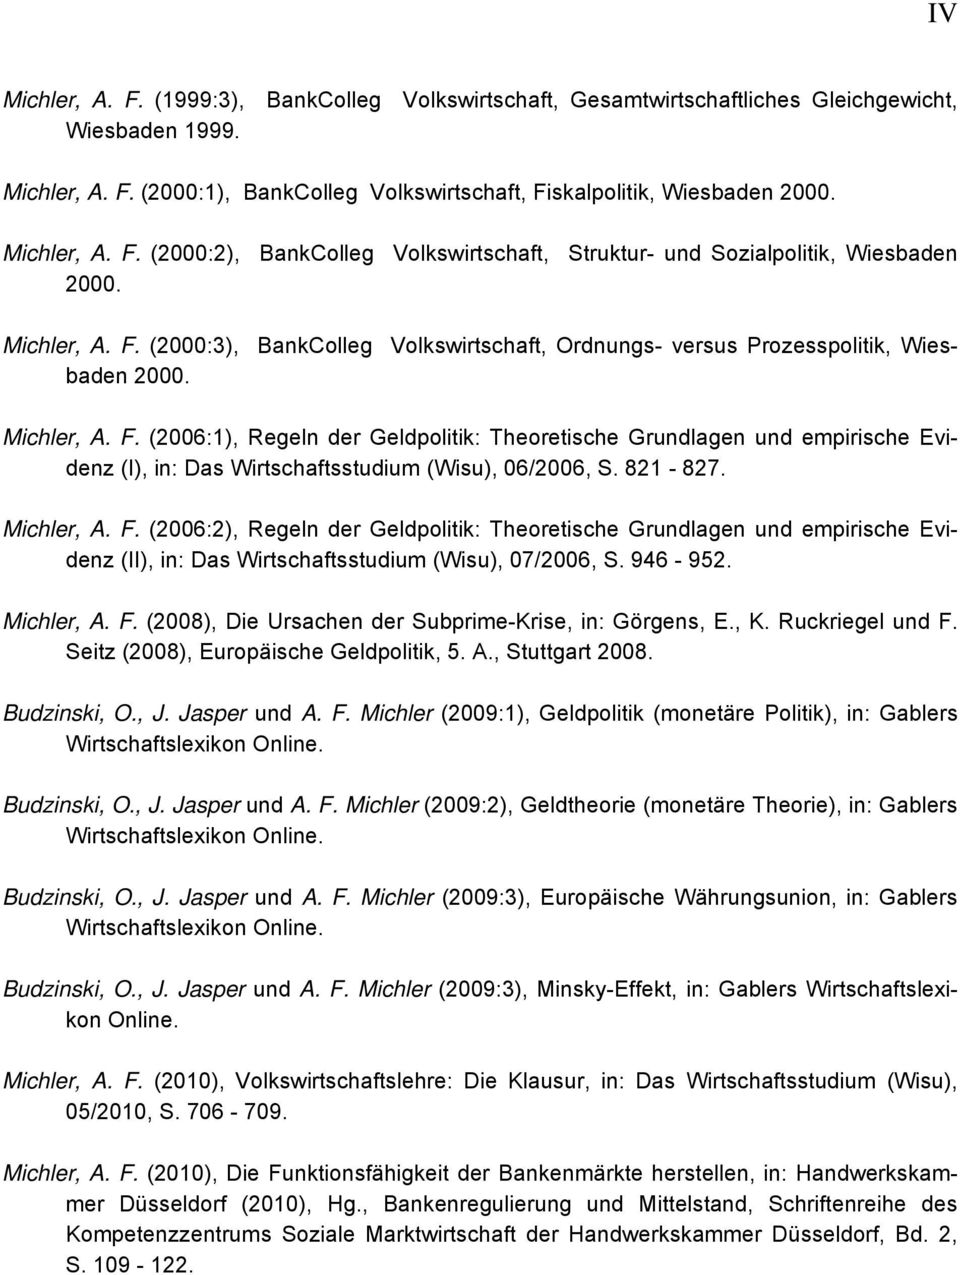 Michler, A. F. (2006:1), Regeln der Geldpolitik: Theoretische Grundlagen und empirische Evidenz (I), in: Das Wirtschaftsstudium (Wisu), 06/2006, S. 821-827. Michler, A. F. (2006:2), Regeln der Geldpolitik: Theoretische Grundlagen und empirische Evidenz (II), in: Das Wirtschaftsstudium (Wisu), 07/2006, S.